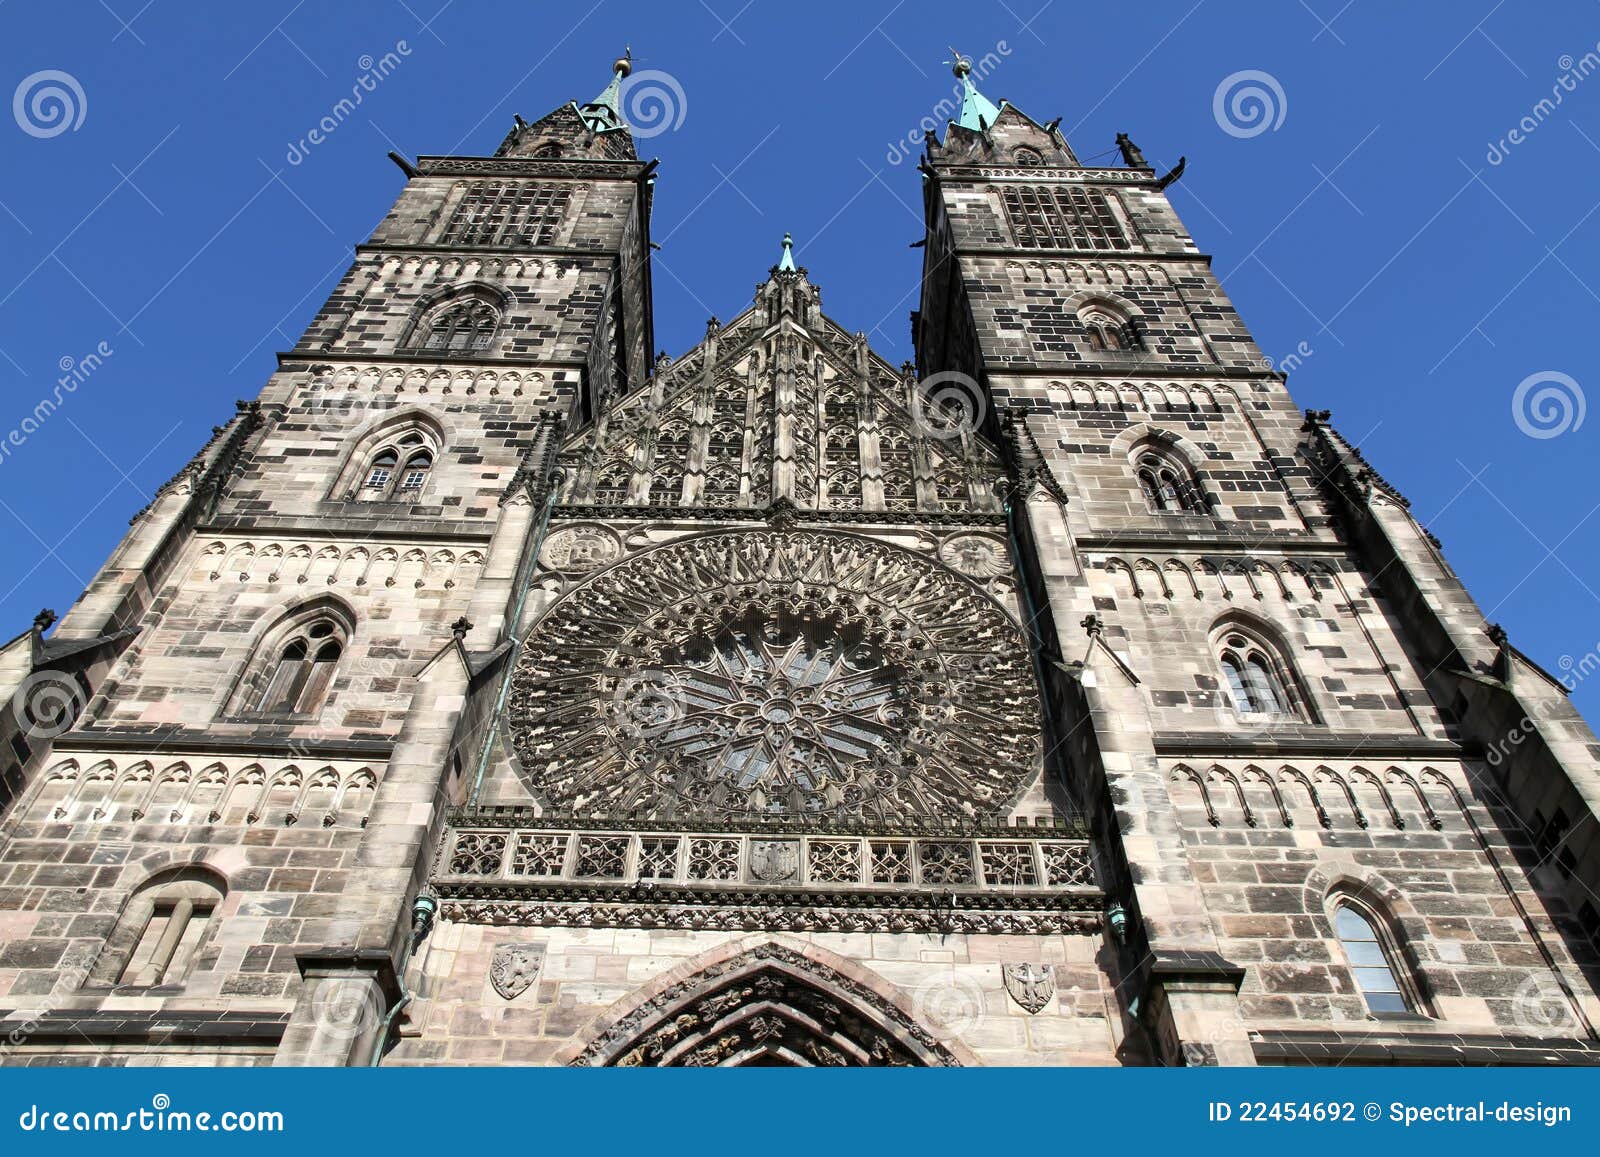 【携程攻略】纽伦堡圣洛伦茨教堂景点,这是一座基督新教的教堂，教堂看上去非常的气势磅礴，雄伟壮观，塔顶…